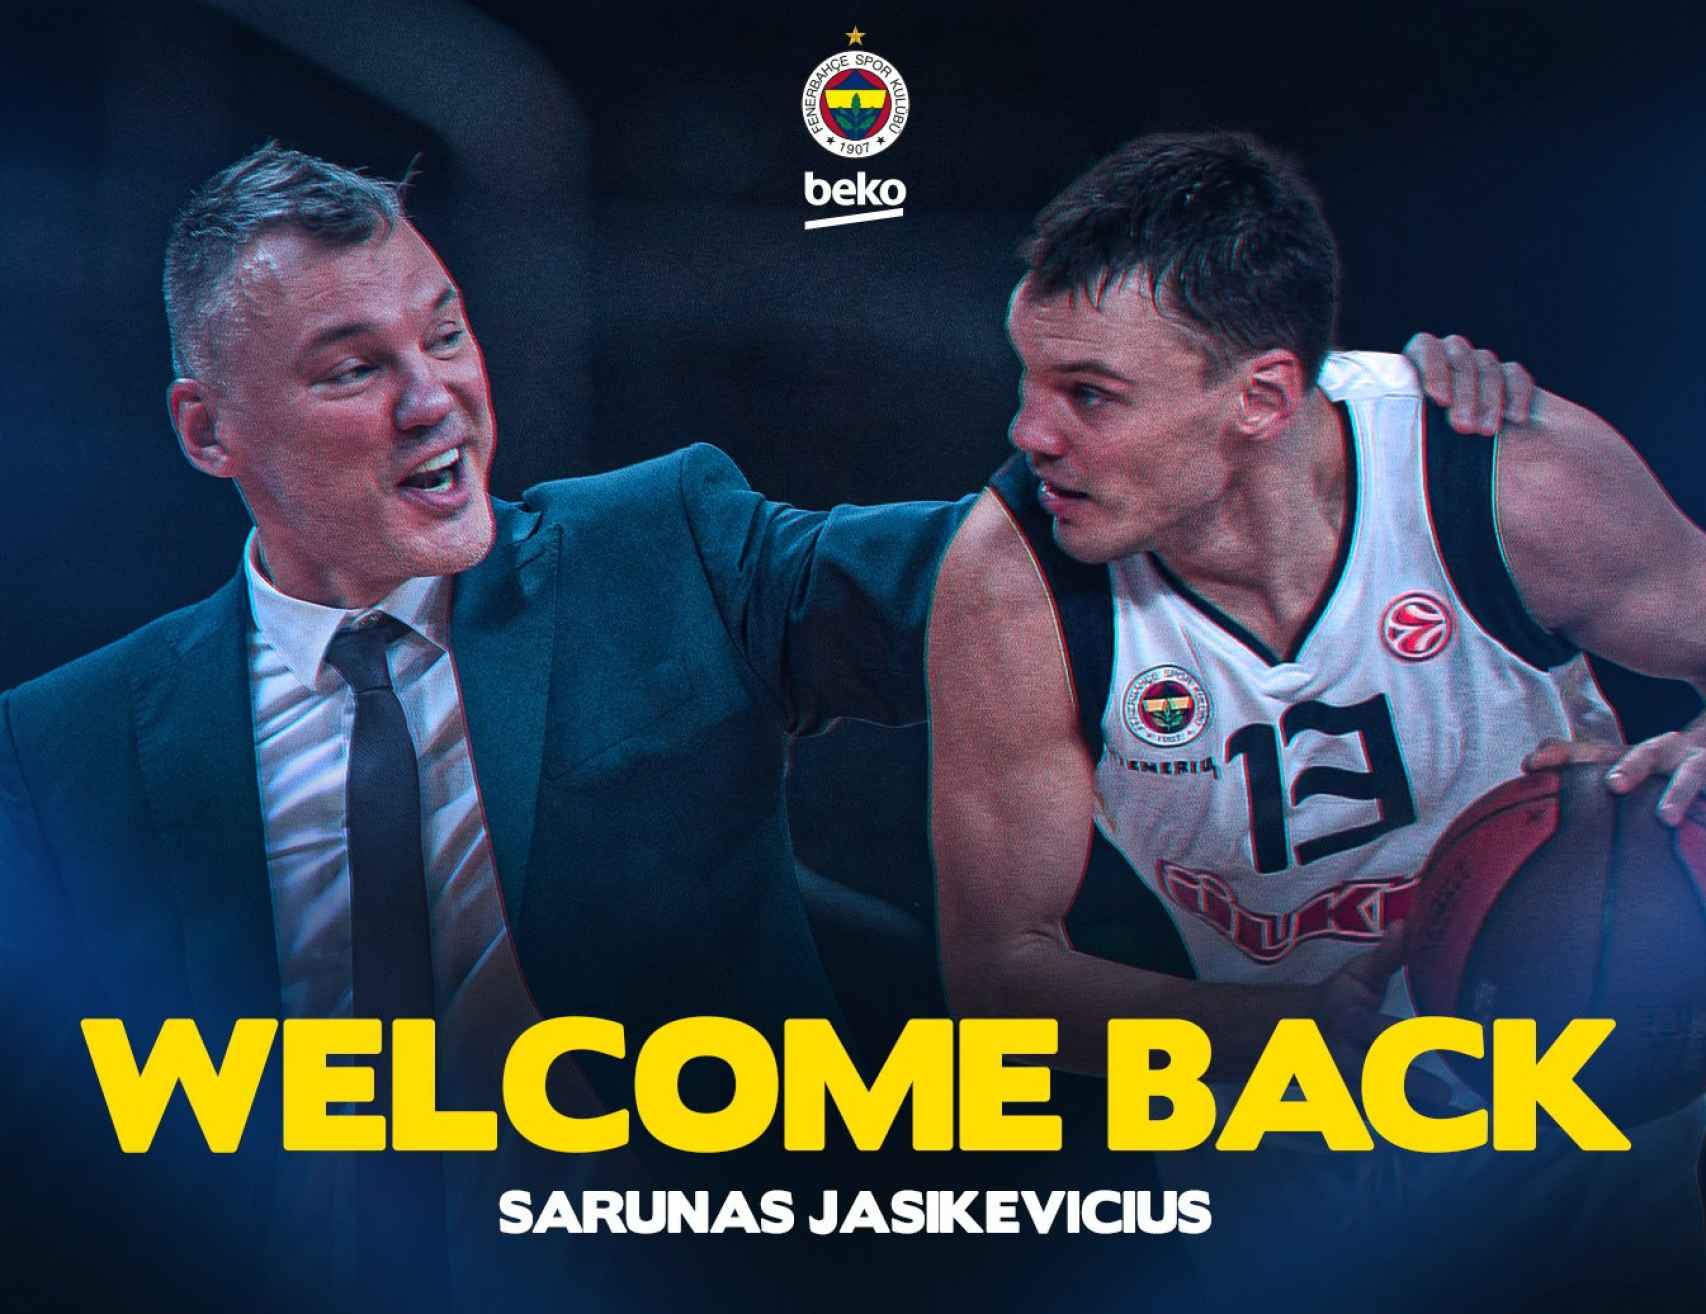 El Fenerbahce de baloncesto anuncia el fichaje de Saras Jasikevicius como entrenador